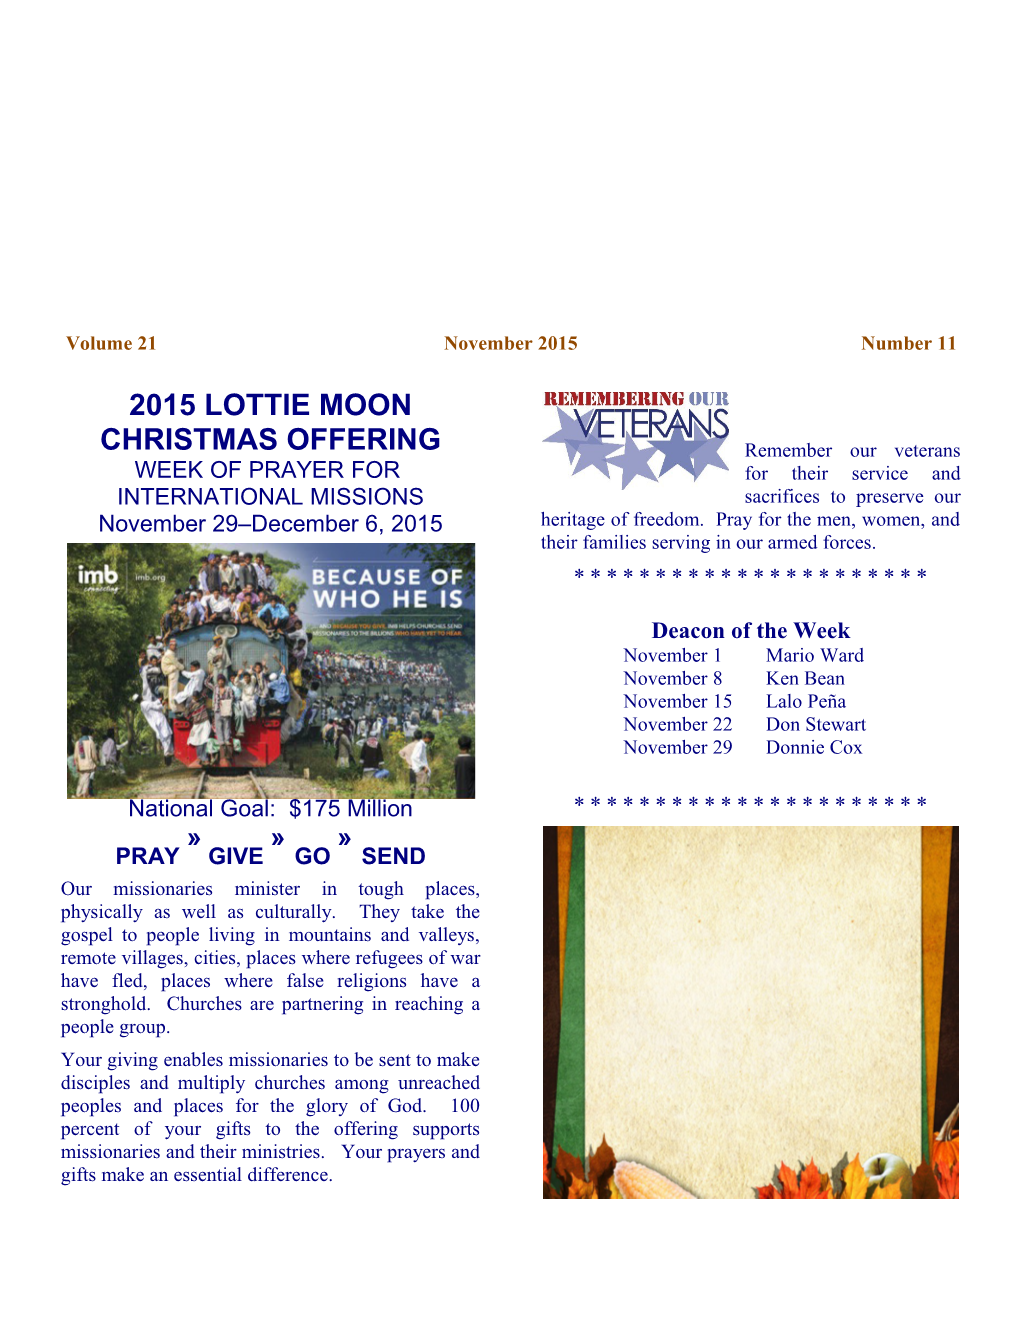 2015 Lottie Moon Christmas Offering